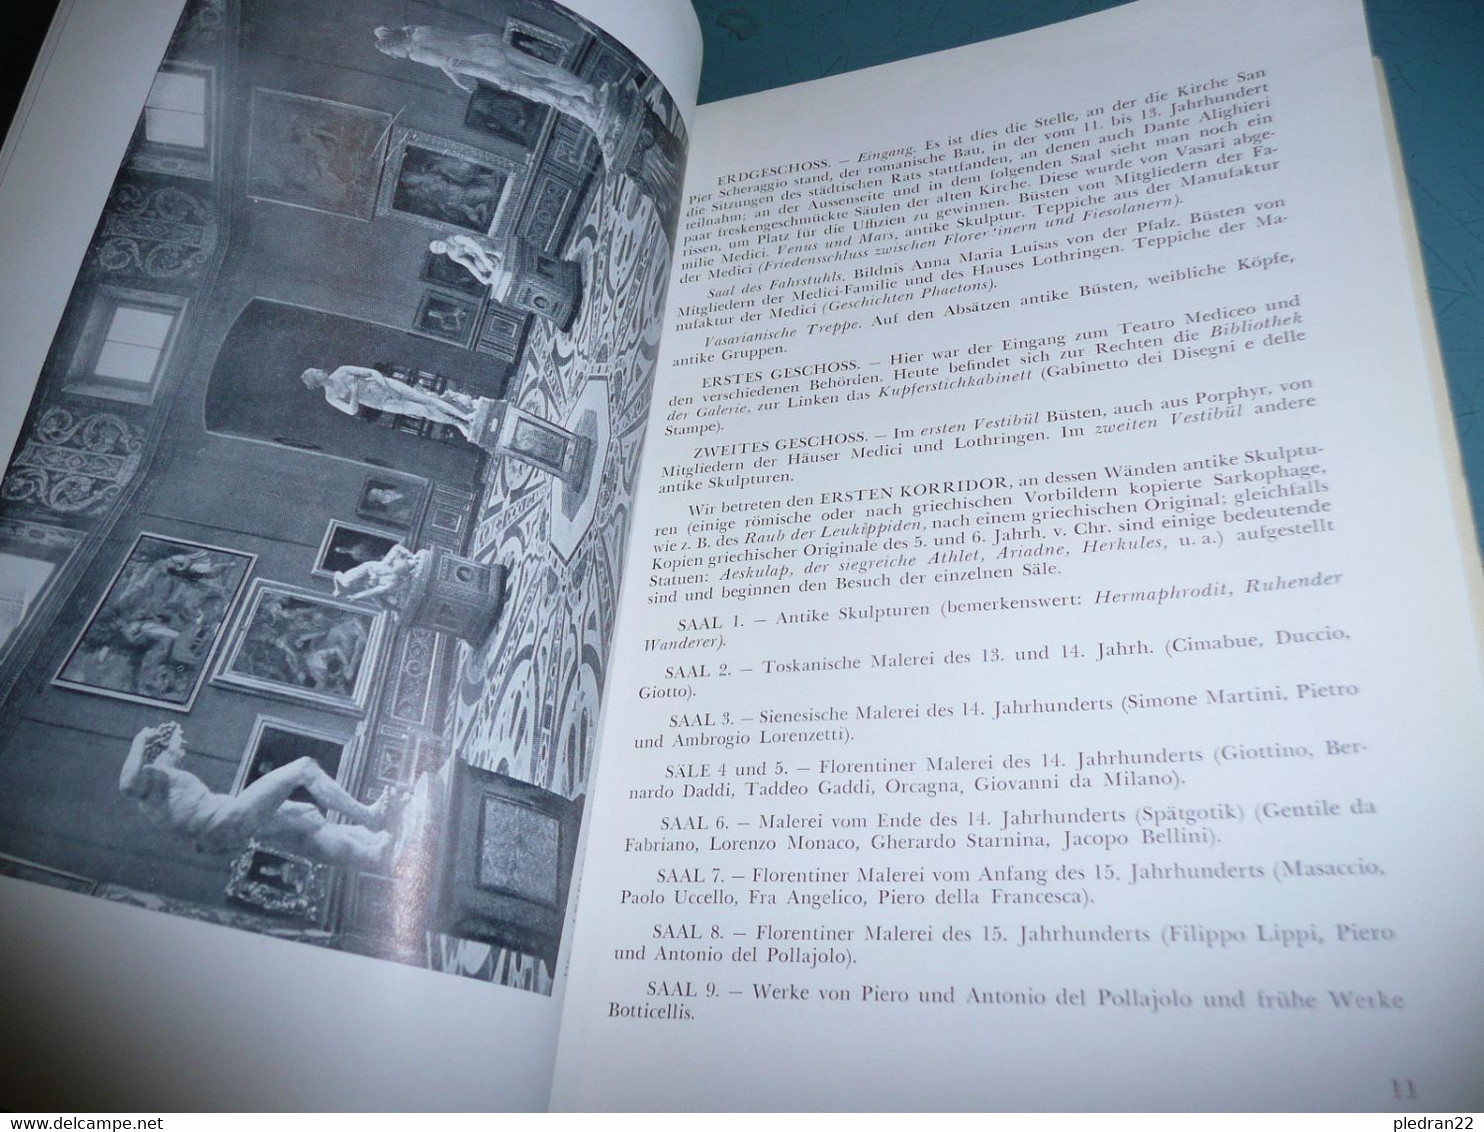 CESARE FASOLA DIE GALERIE DER UFFIZIEN IN FLORENZ GAKERIE DES OFFICES A FLORENCE ALBUM FÜHRER 1955 VERSION EN ALLEMAND - Malerei & Skulptur